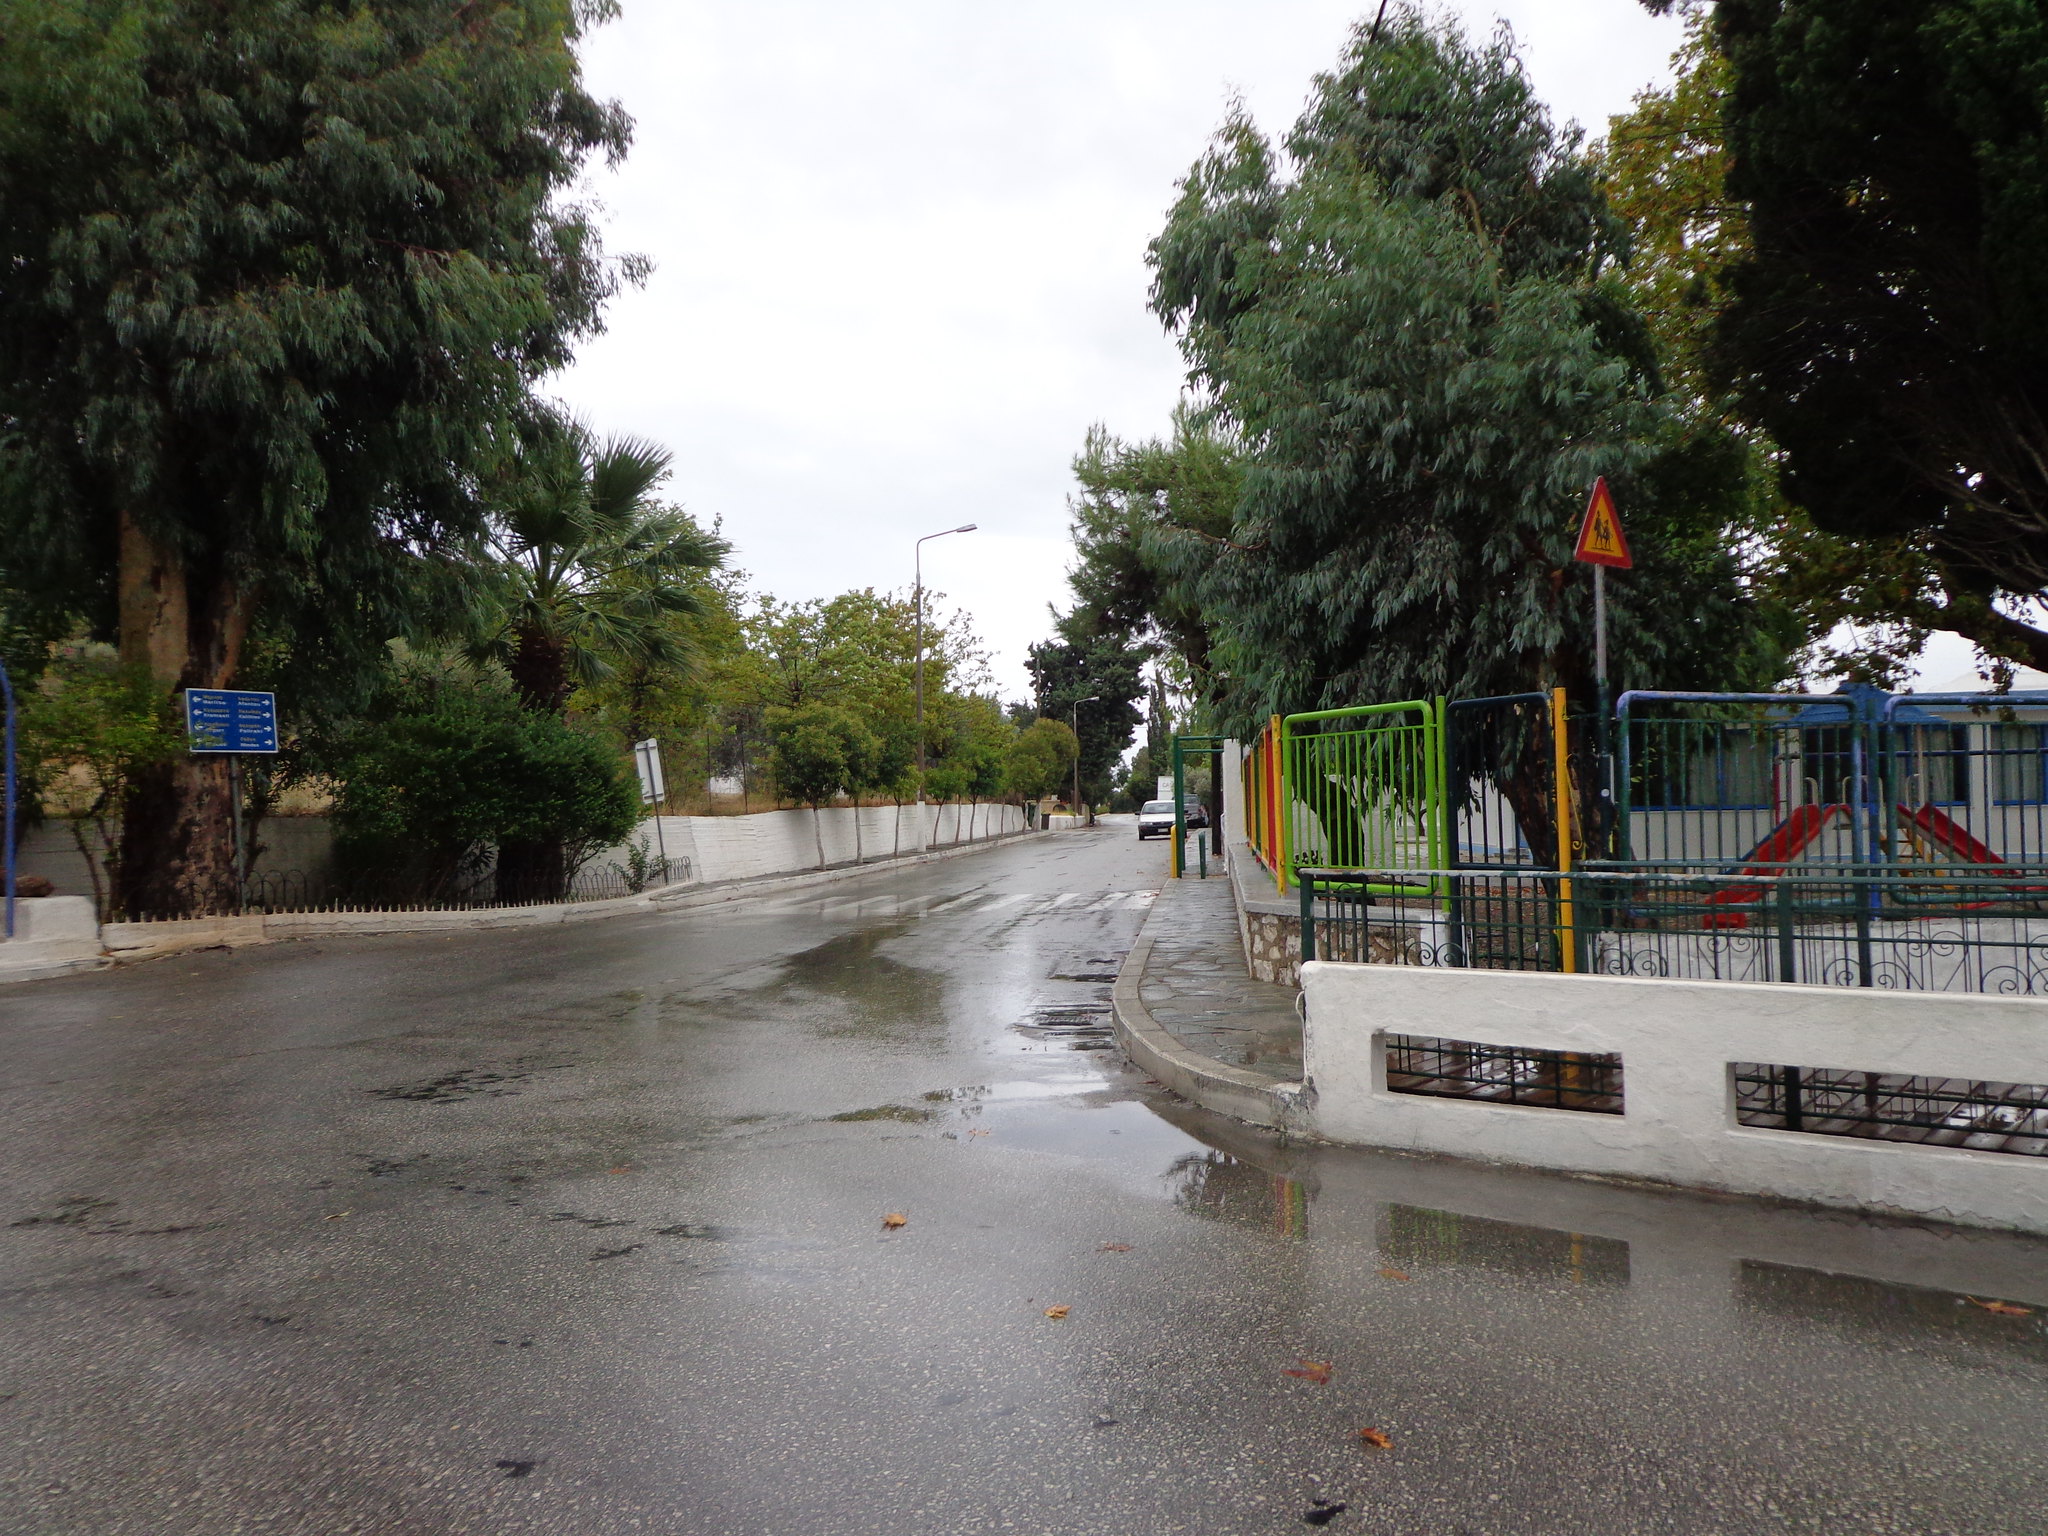 Ψίνθος Φθινόπωρο 2014 - Πρωτοβρόχι, η πρώτη φθινοπωρινή βροχή.